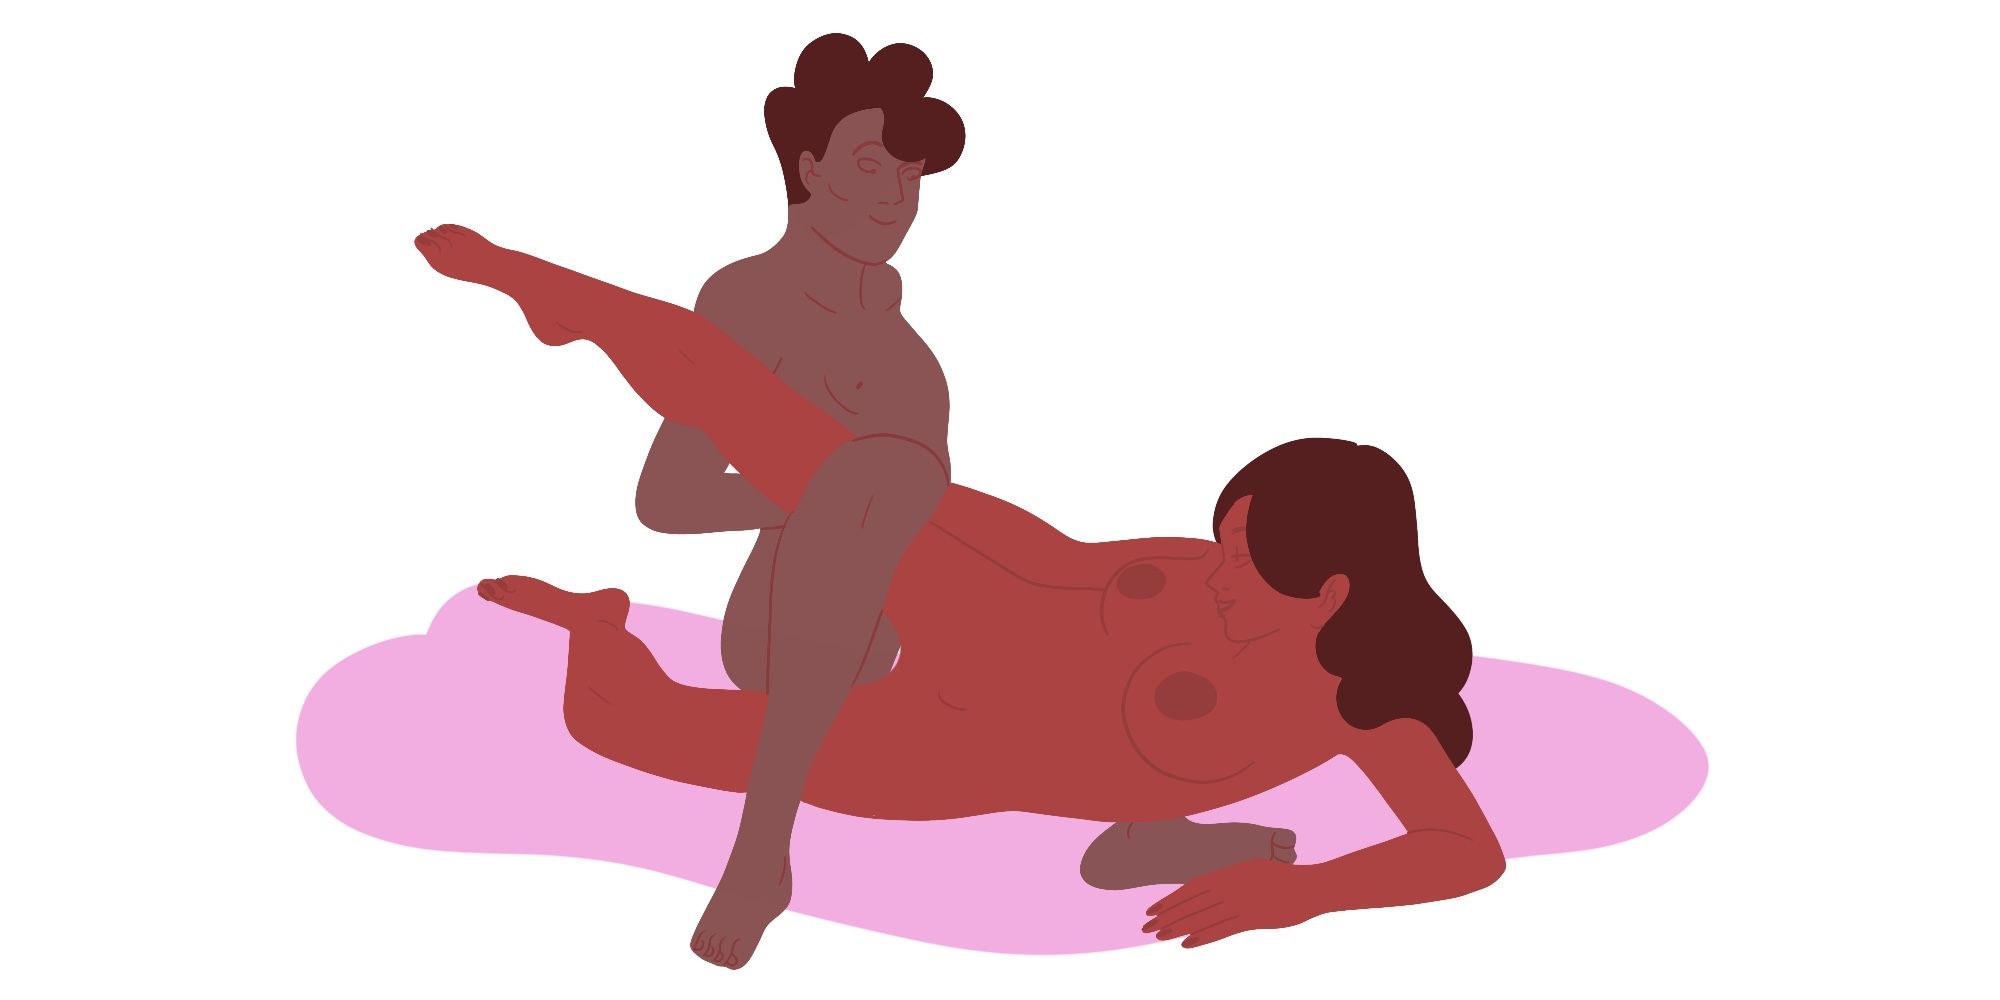 Dip Sex - Pretzel Dip Sex Position - How to Do the Pretzel Dip Sex Position